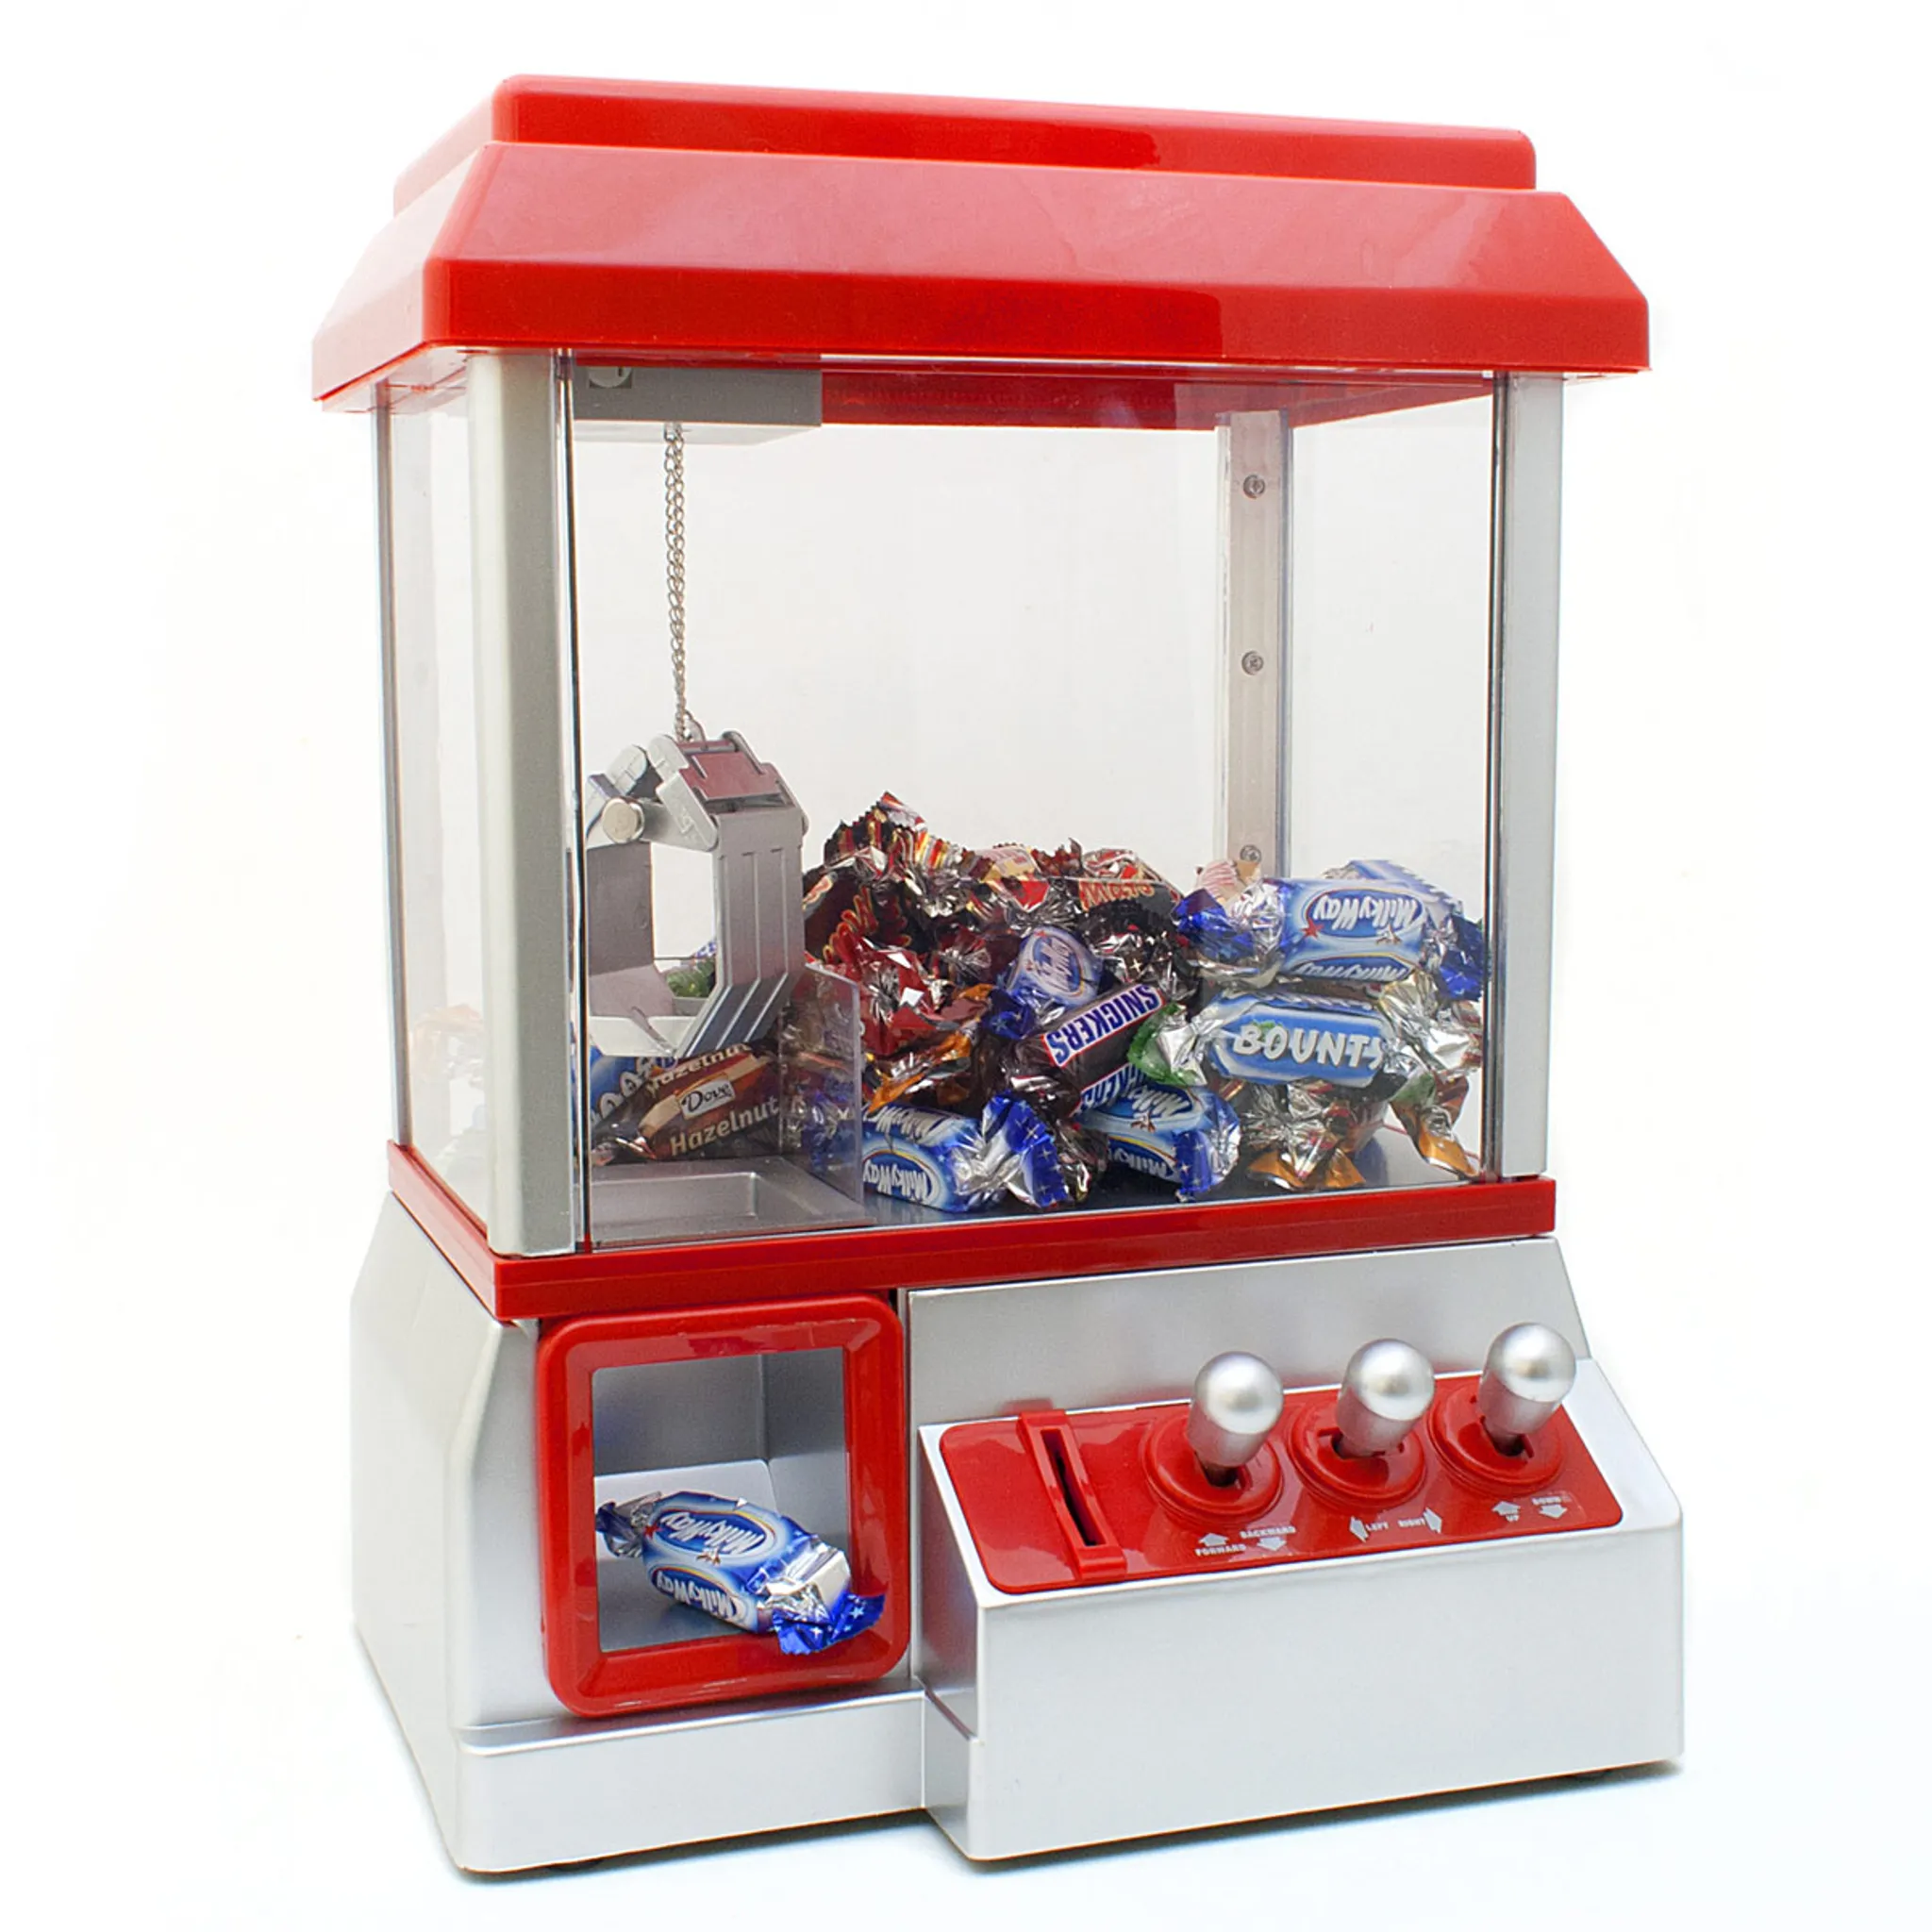 Süßigkeitenautomat Süßigkeiten Greifautomat Spender Maschine mit Greifarm